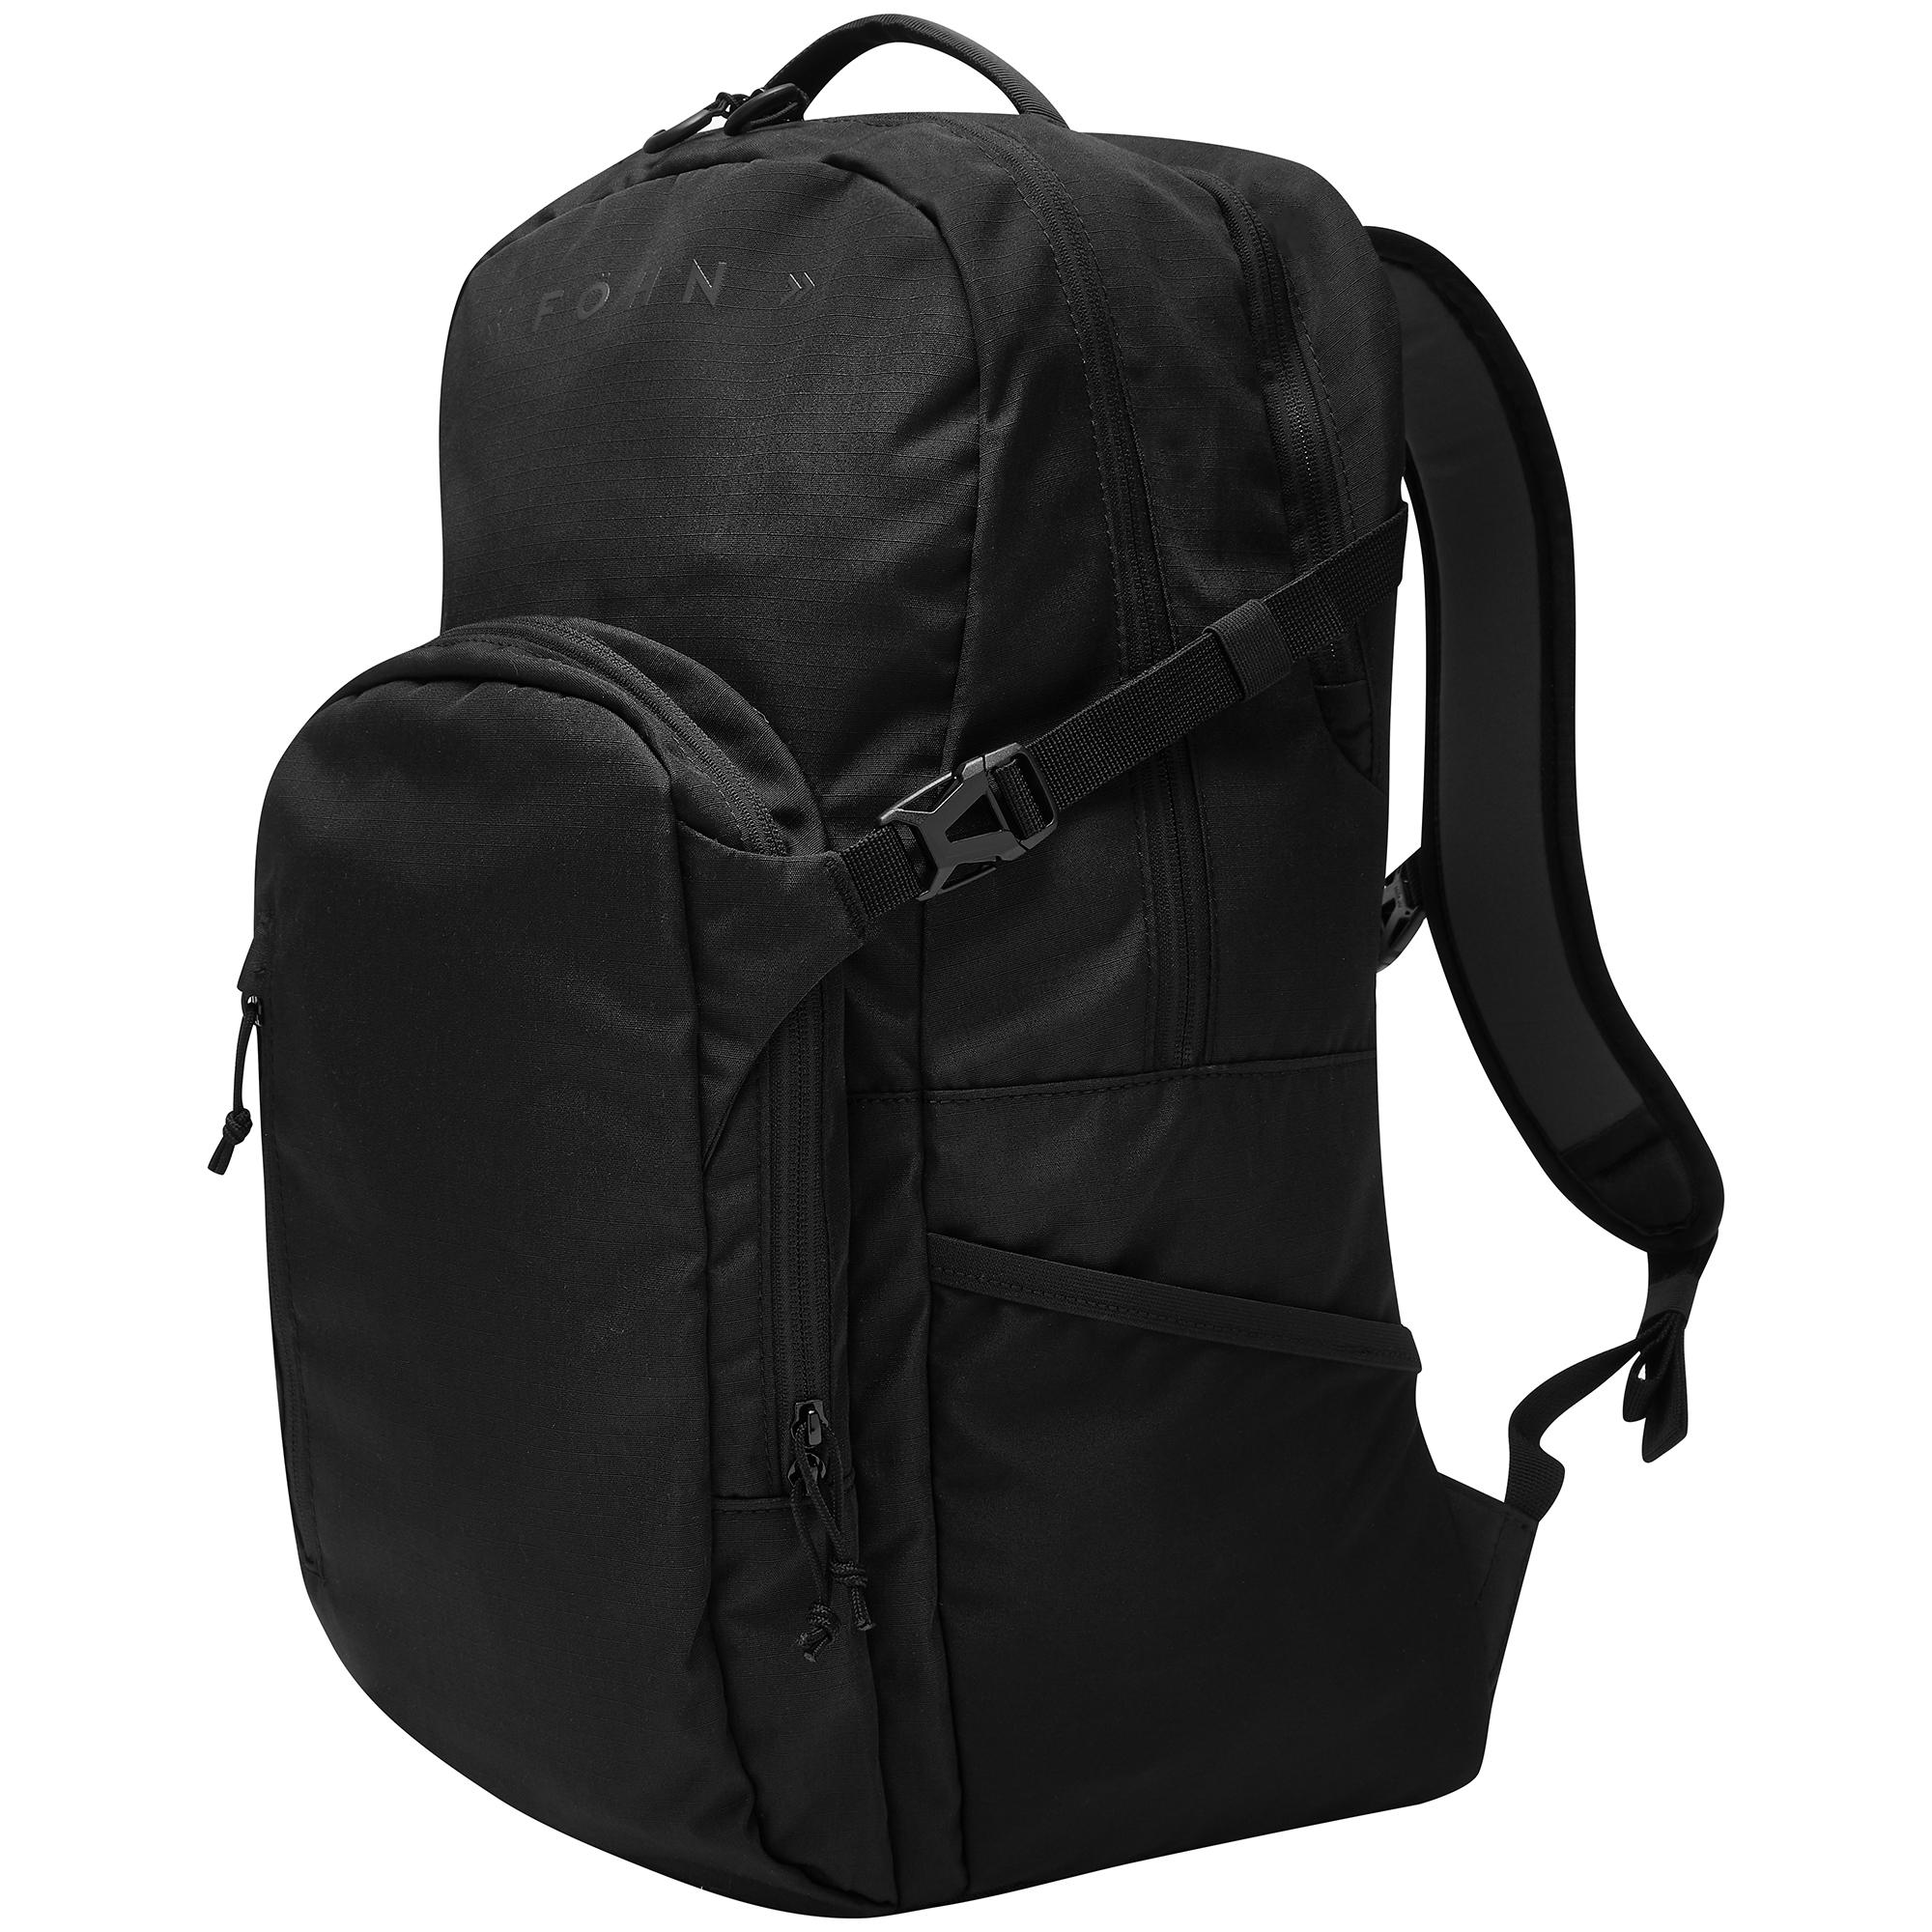 Fhn Commuter Backpack  Black